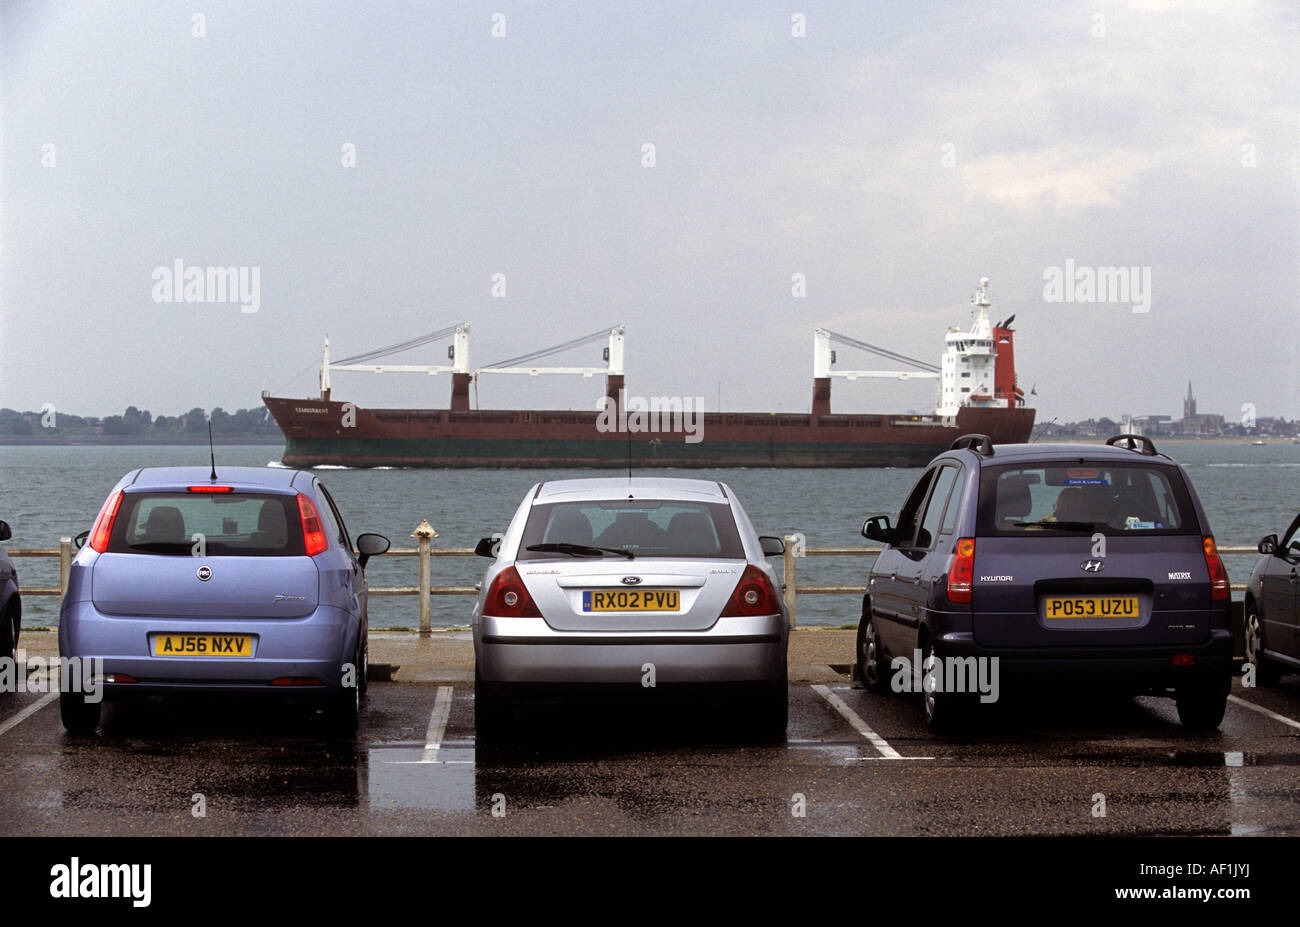 Voitures garées sur le point d'observation sur le port de Felixstowe, Suffolk, UK. Banque D'Images